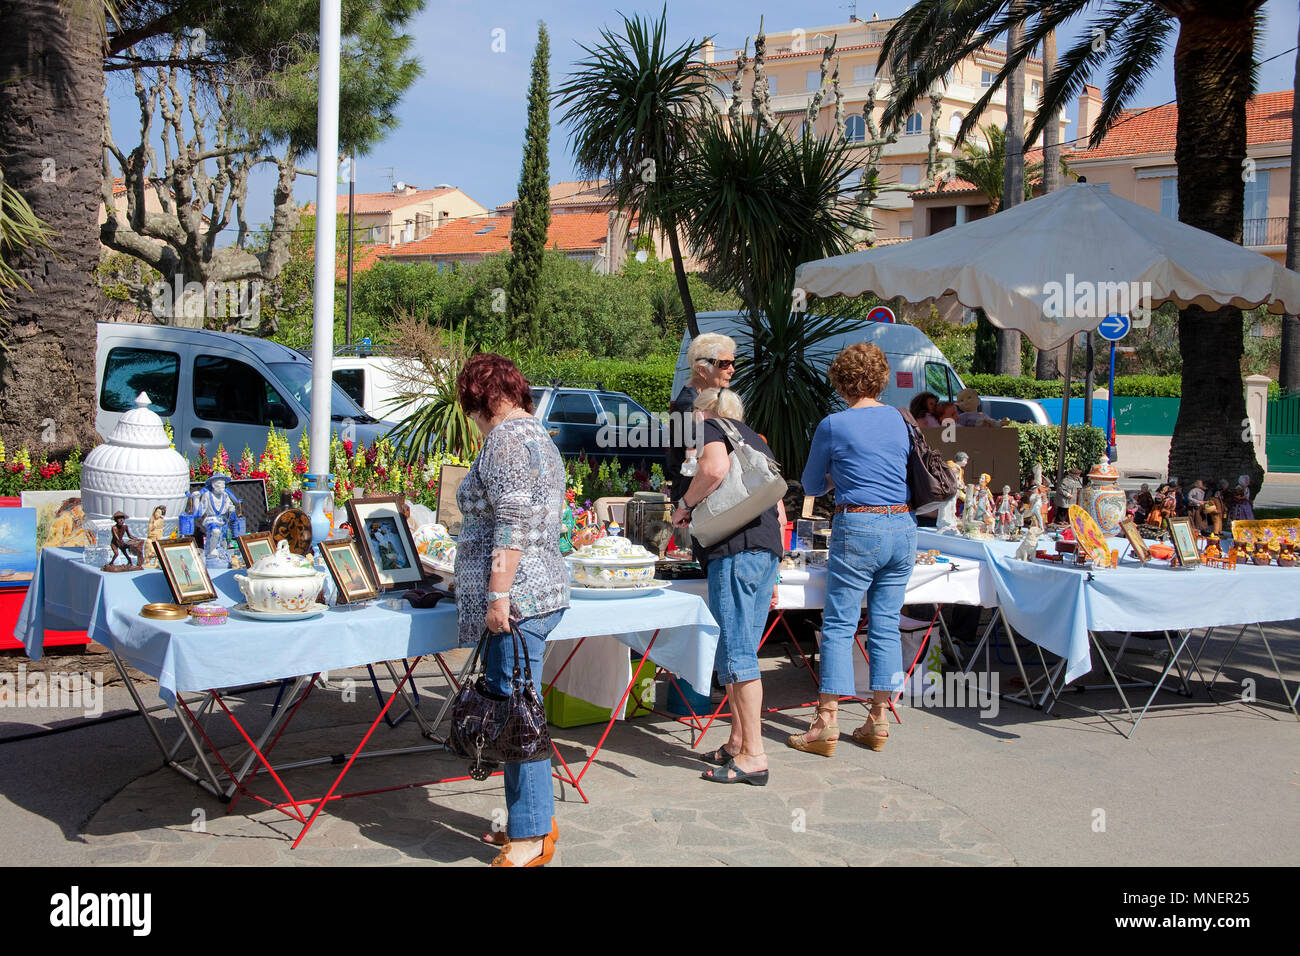 Flee market at old town of Sainte-Maxime, Cote d'Azur, Département Var, Provence-Alpes-Côte d’Azur, South France, France, Europe Stock Photo